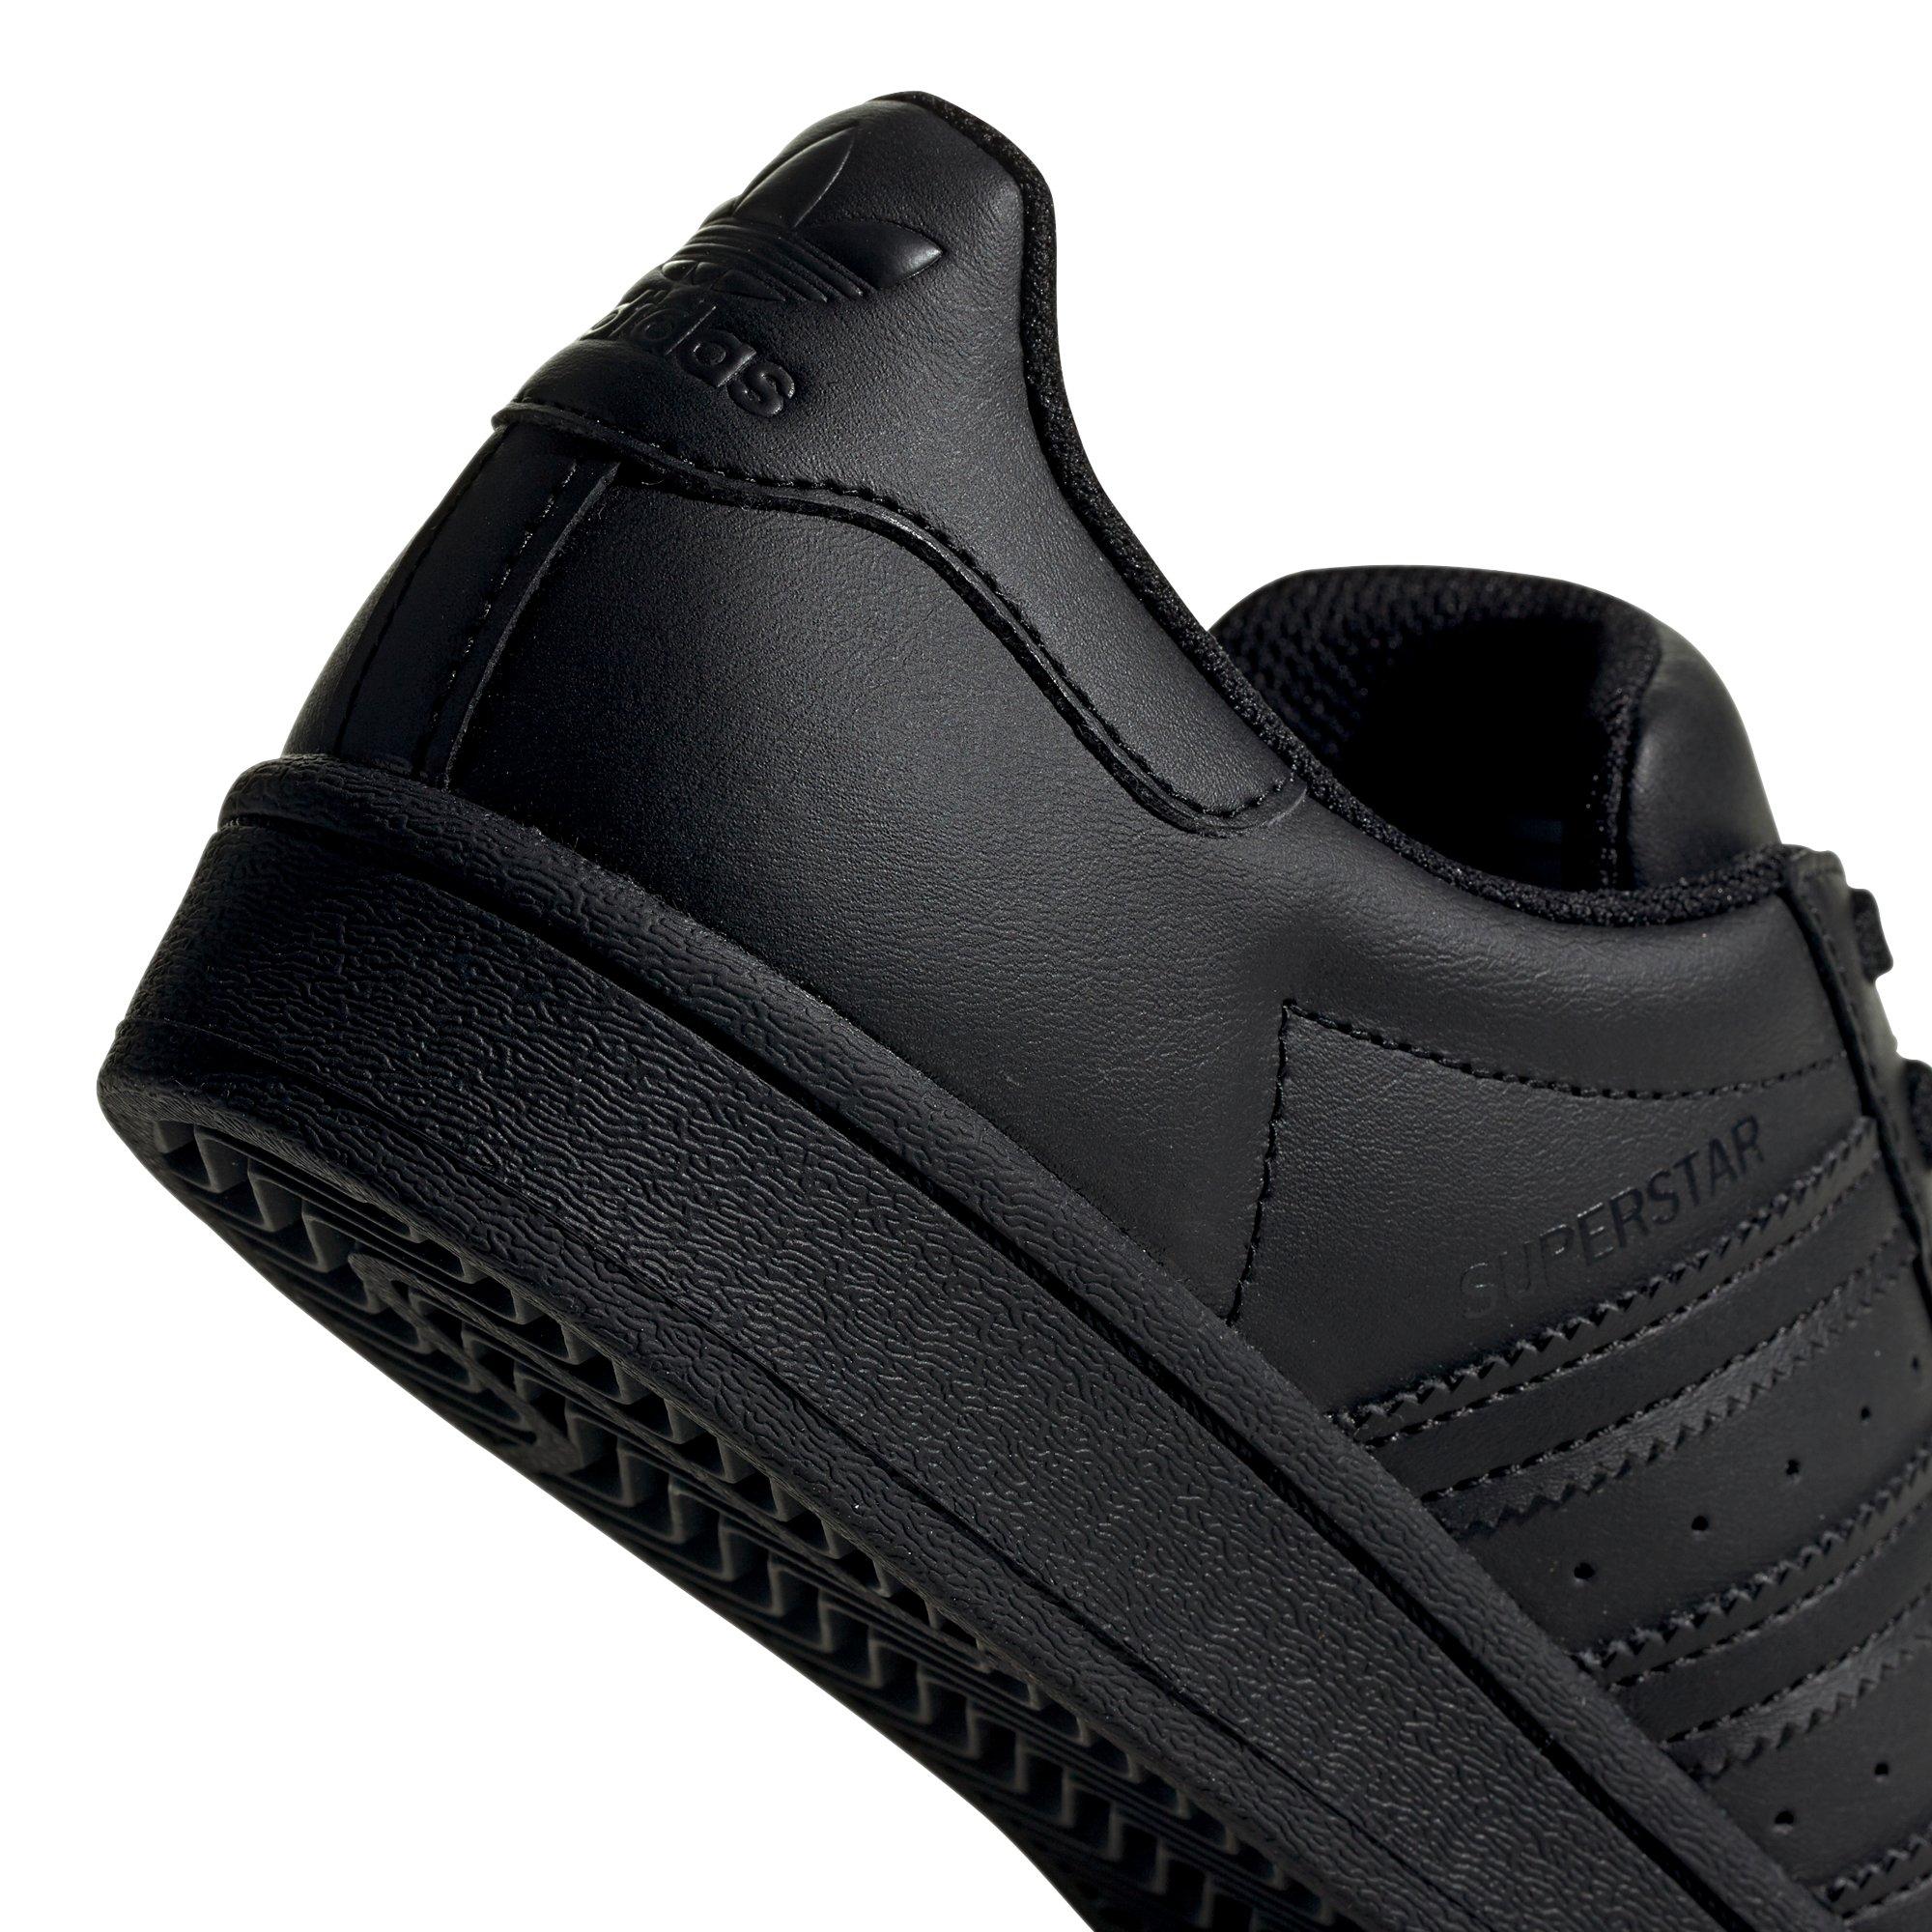 adidas shell toe black